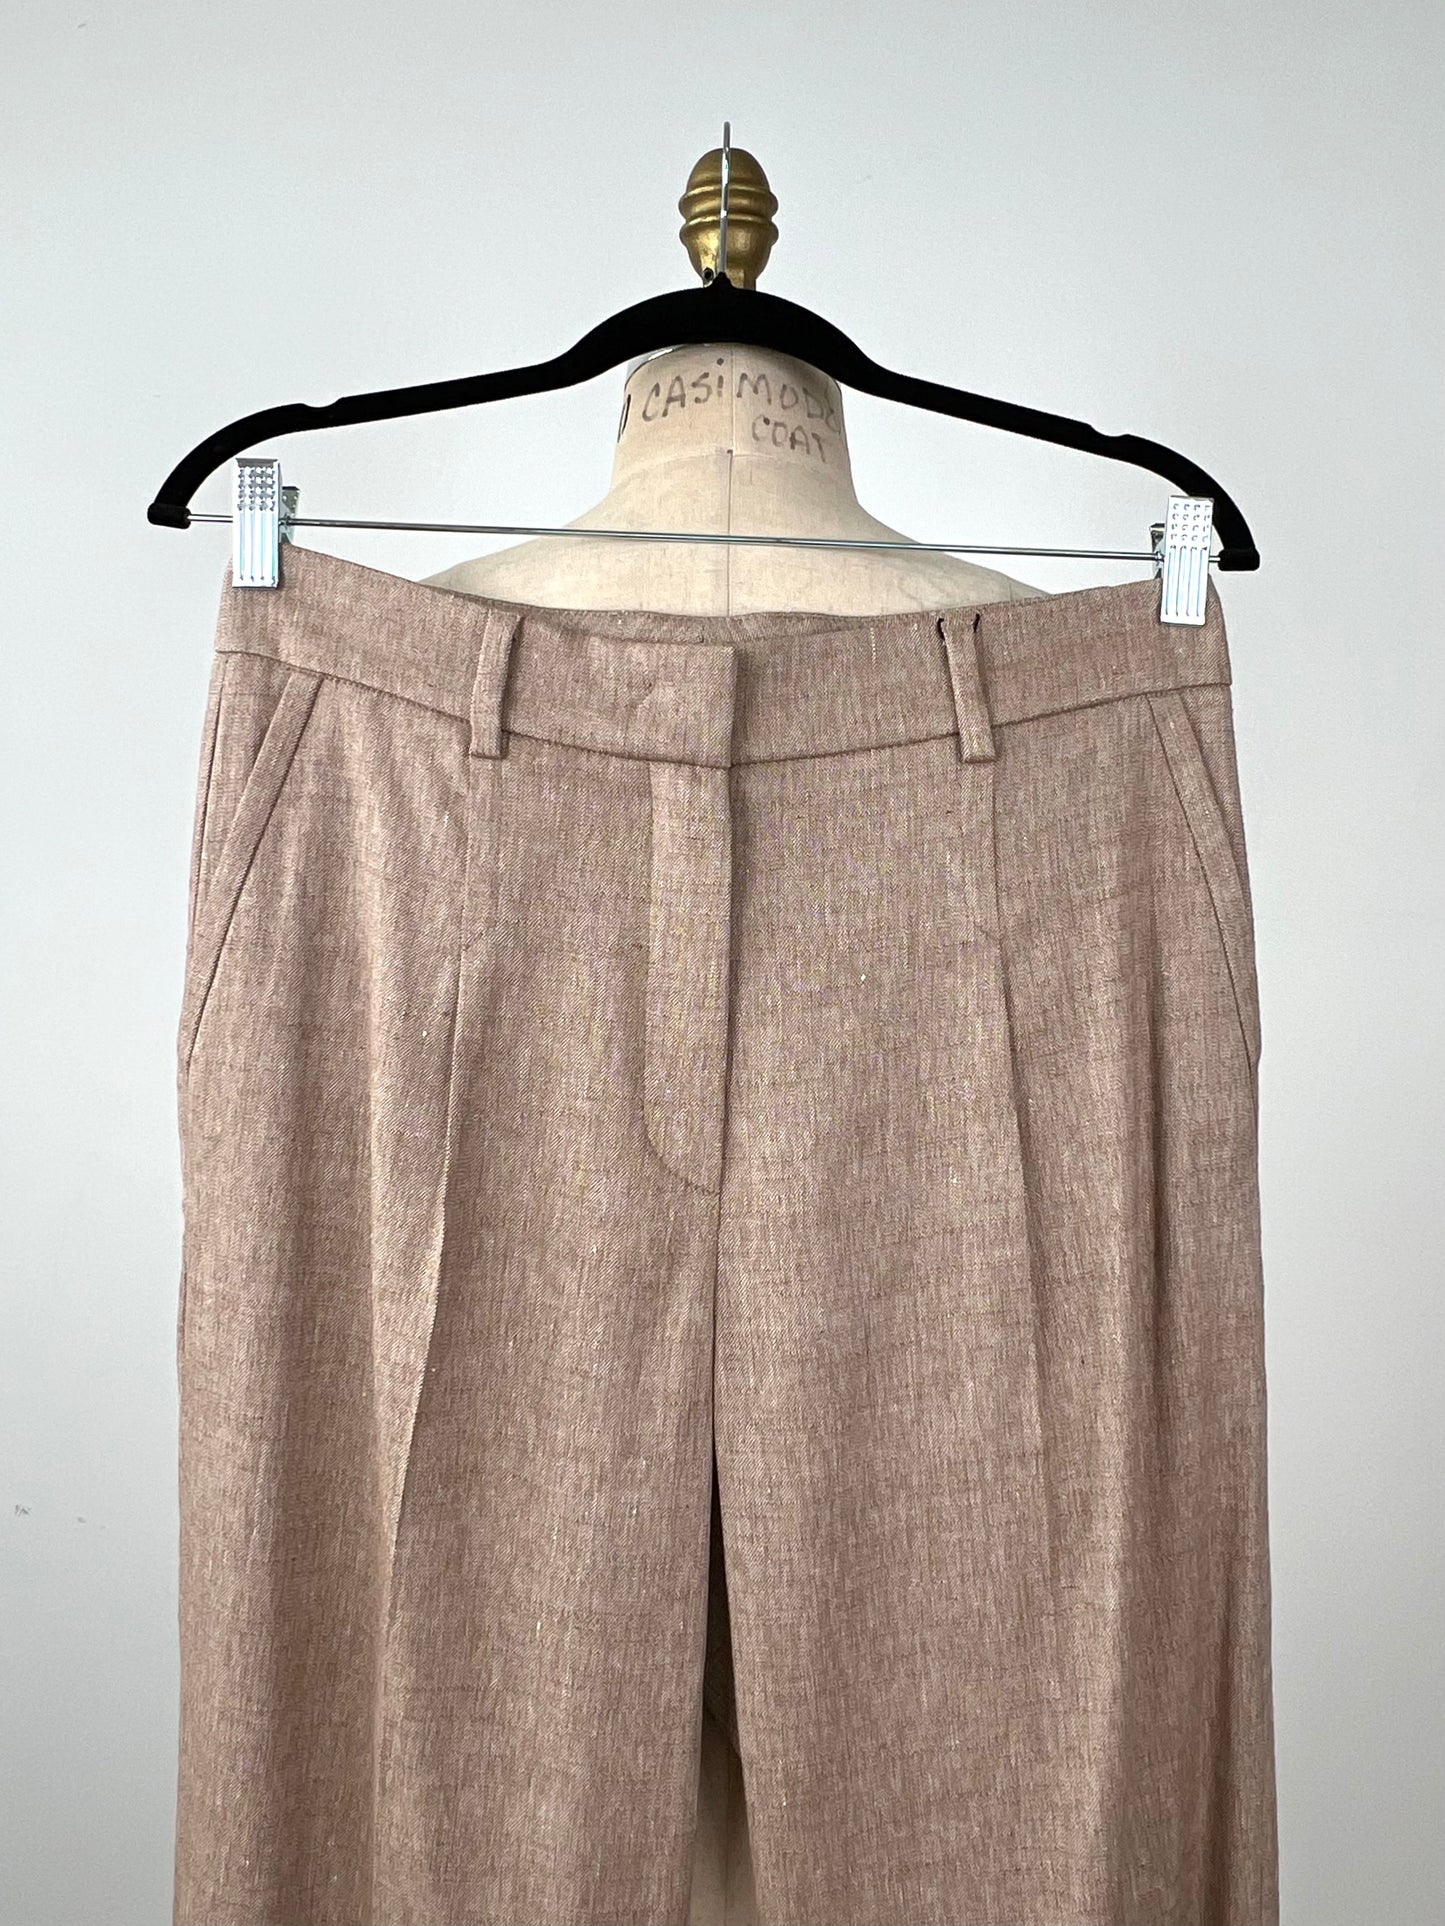 Pantalon tailleur  en tissage moka / crème (8)